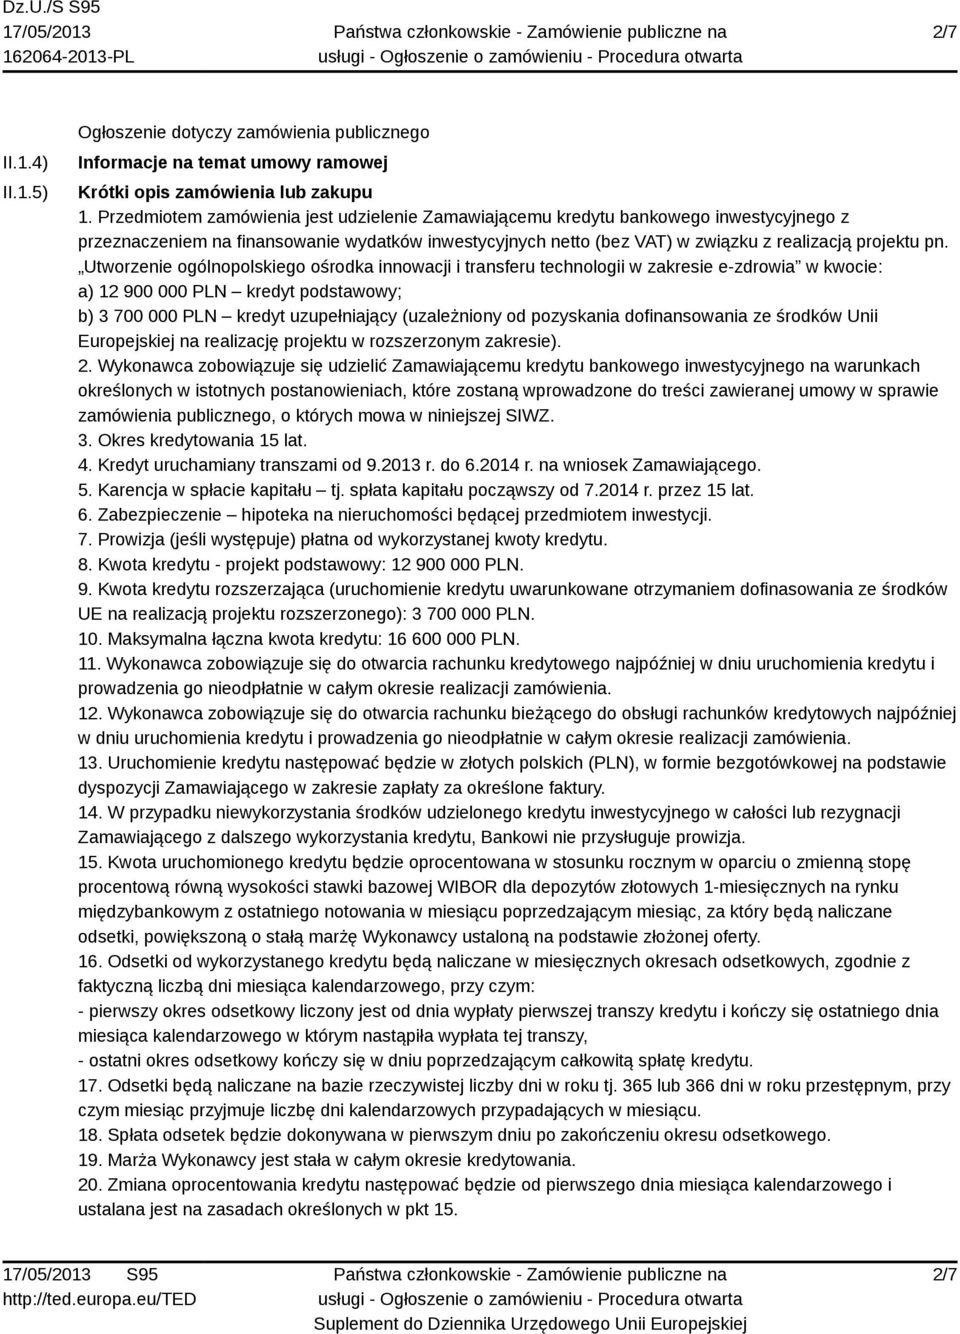 Utworzenie ogólnopolskiego ośrodka innowacji i transferu technologii w zakresie e-zdrowia w kwocie: a) 12 900 000 PLN kredyt podstawowy; b) 3 700 000 PLN kredyt uzupełniający (uzależniony od